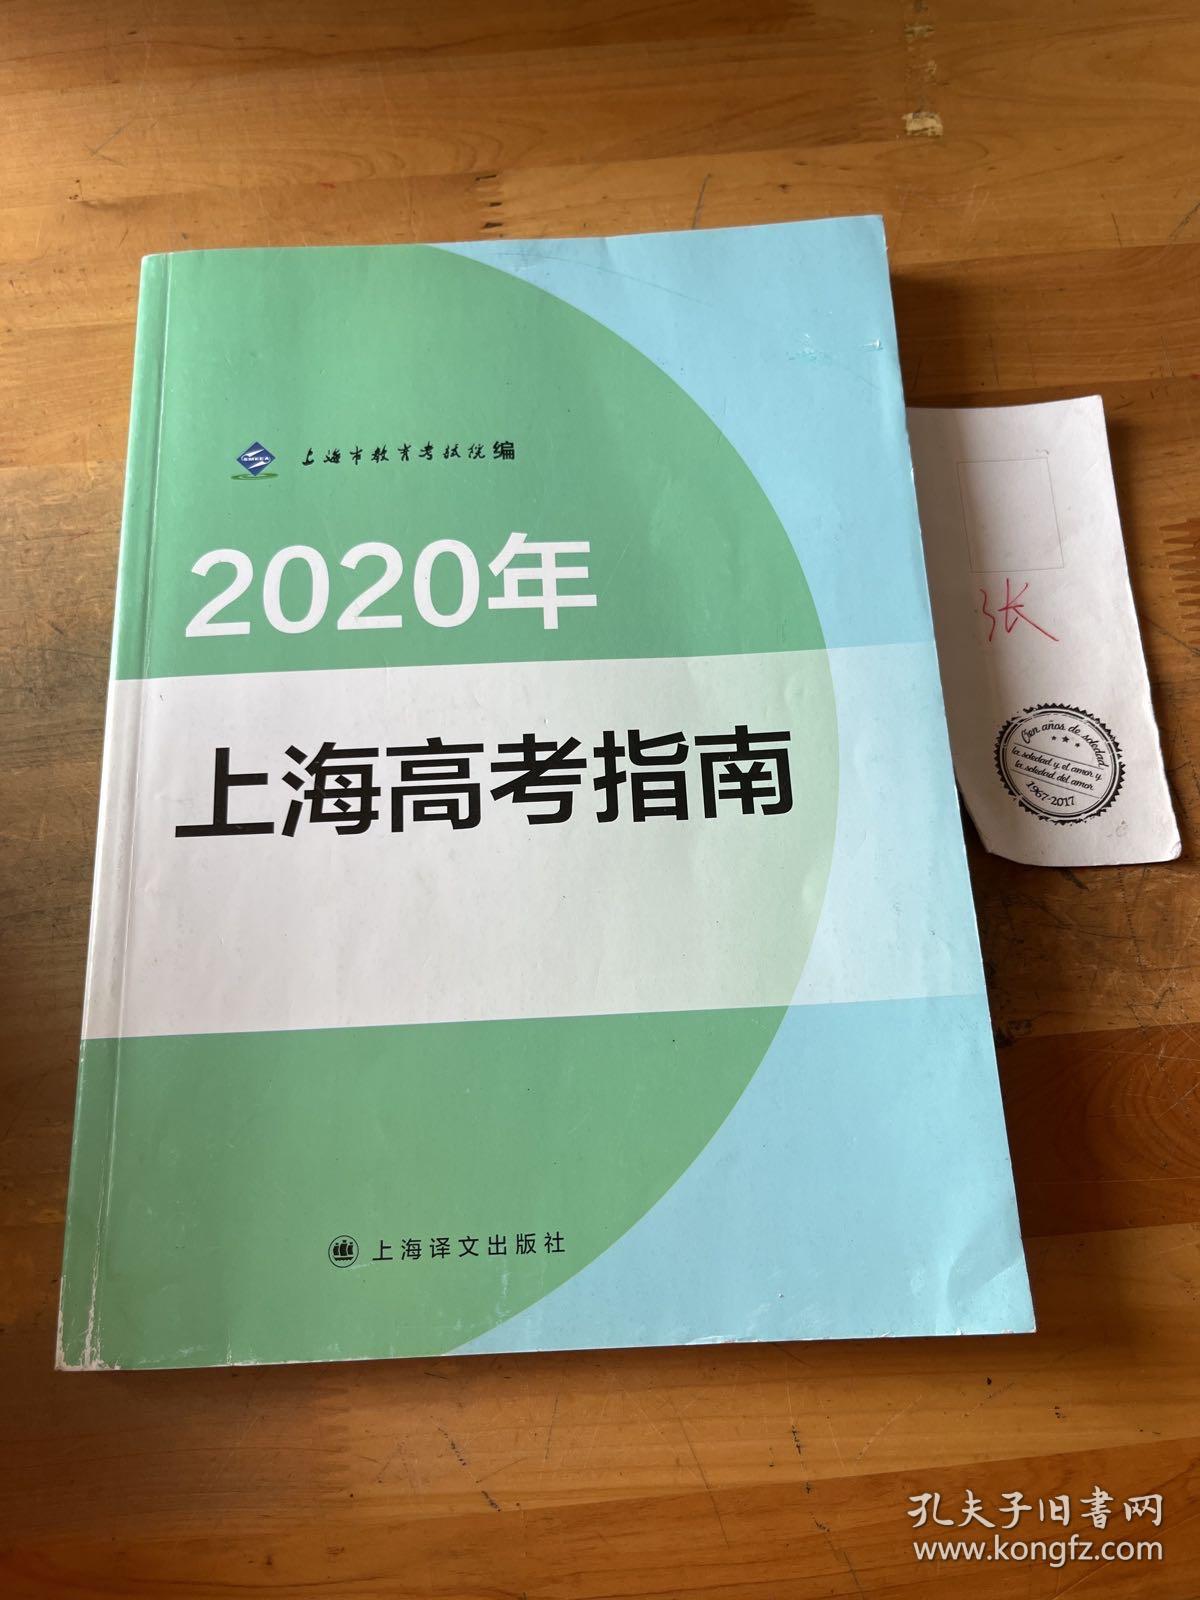 2020年 上海高考指南